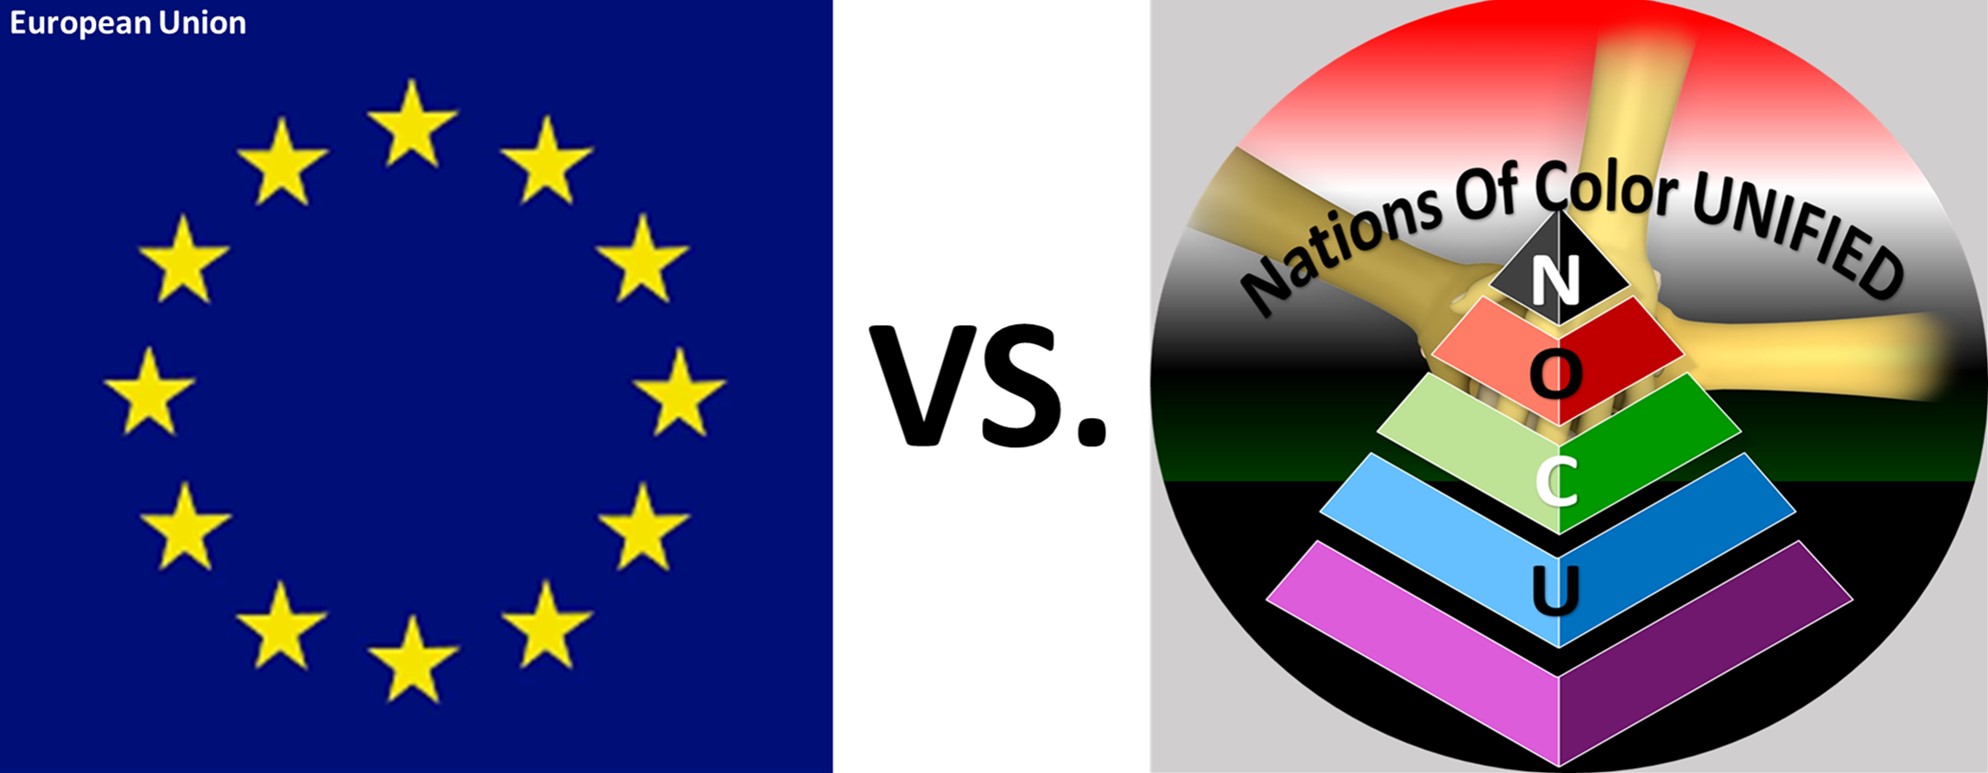 EU vs NOCU